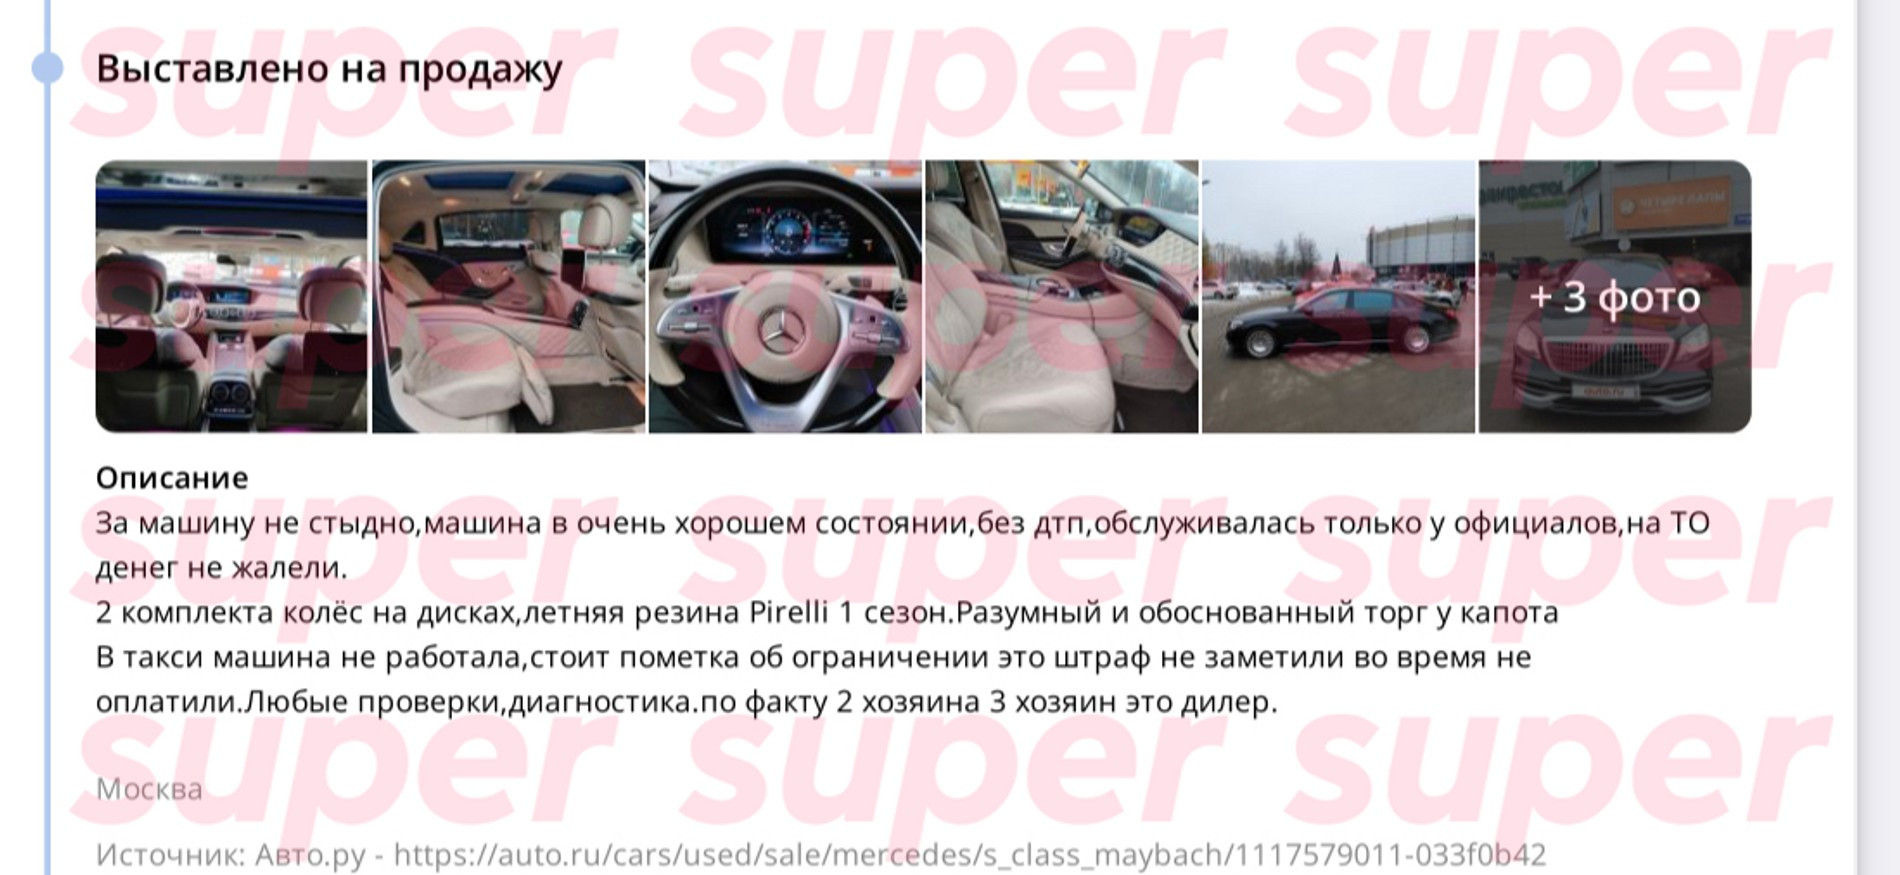 Удаленное объявление о продаже машины Милохина
Фото: Super, закрытые источники